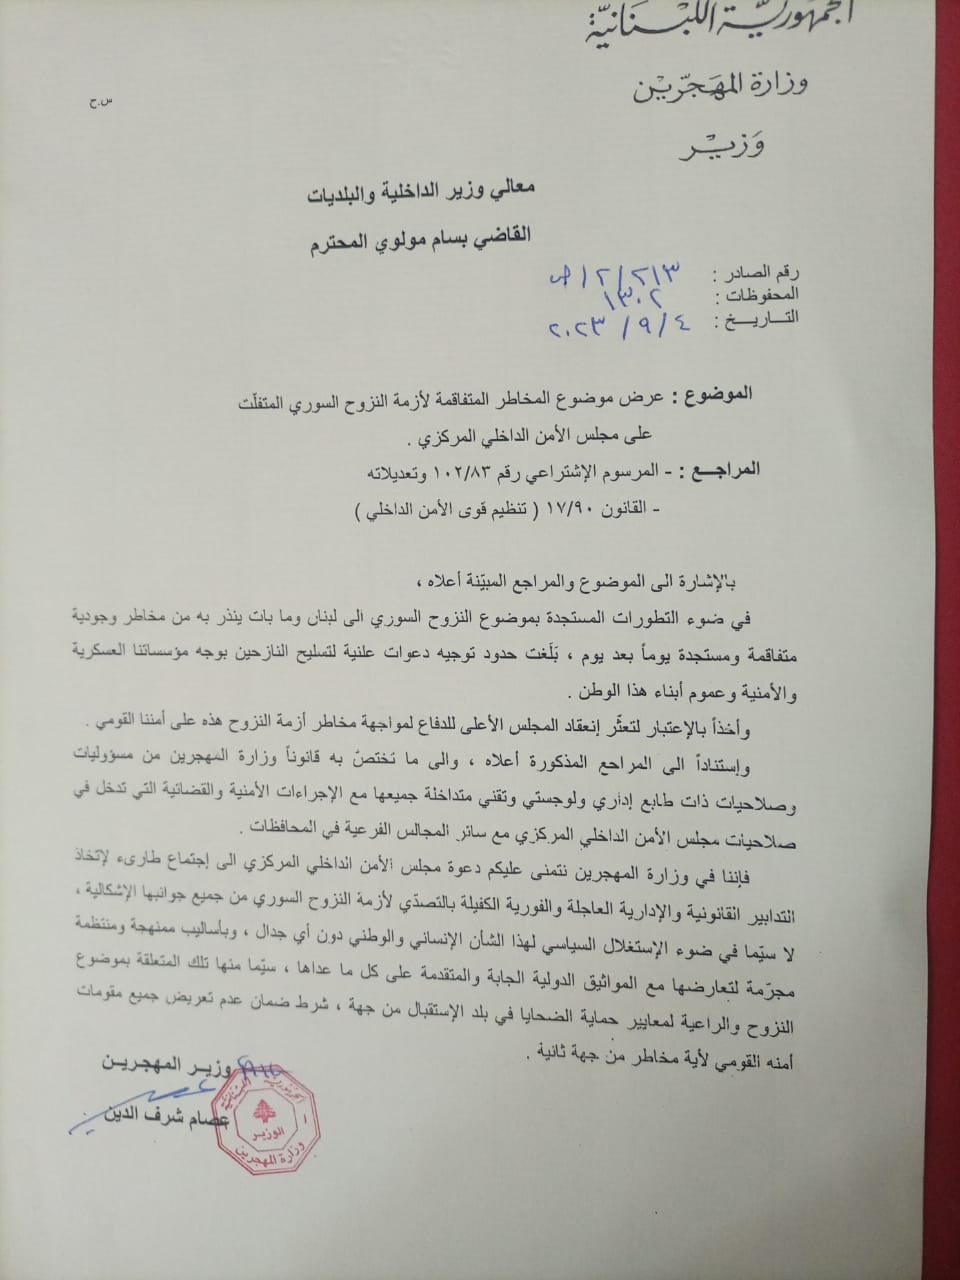 طلب وزير المهجرين عقد اجتماع مجلس أمن مركزي حول النزوح نظرا للمعلومات الأمنية الخطيرة (اندبندنت عربية)